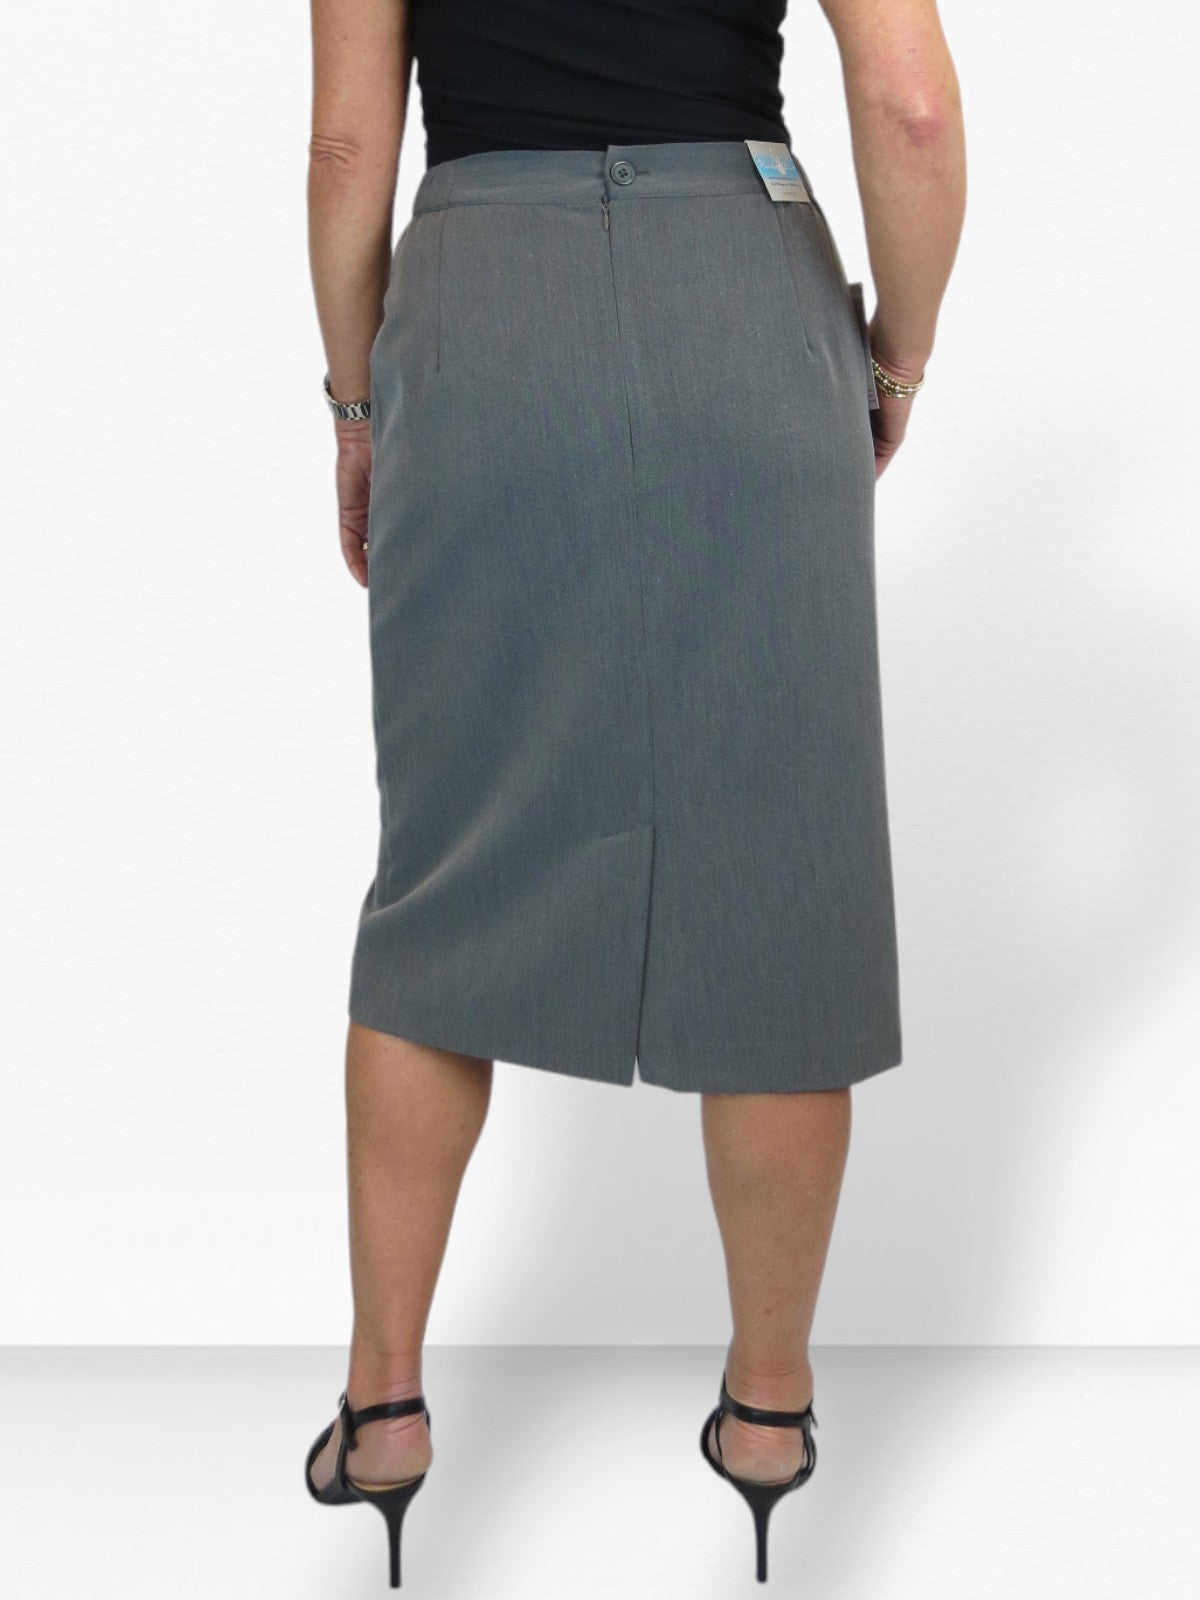 Women's Smart Elasticated Waist Pencil Skirt Marl Grey